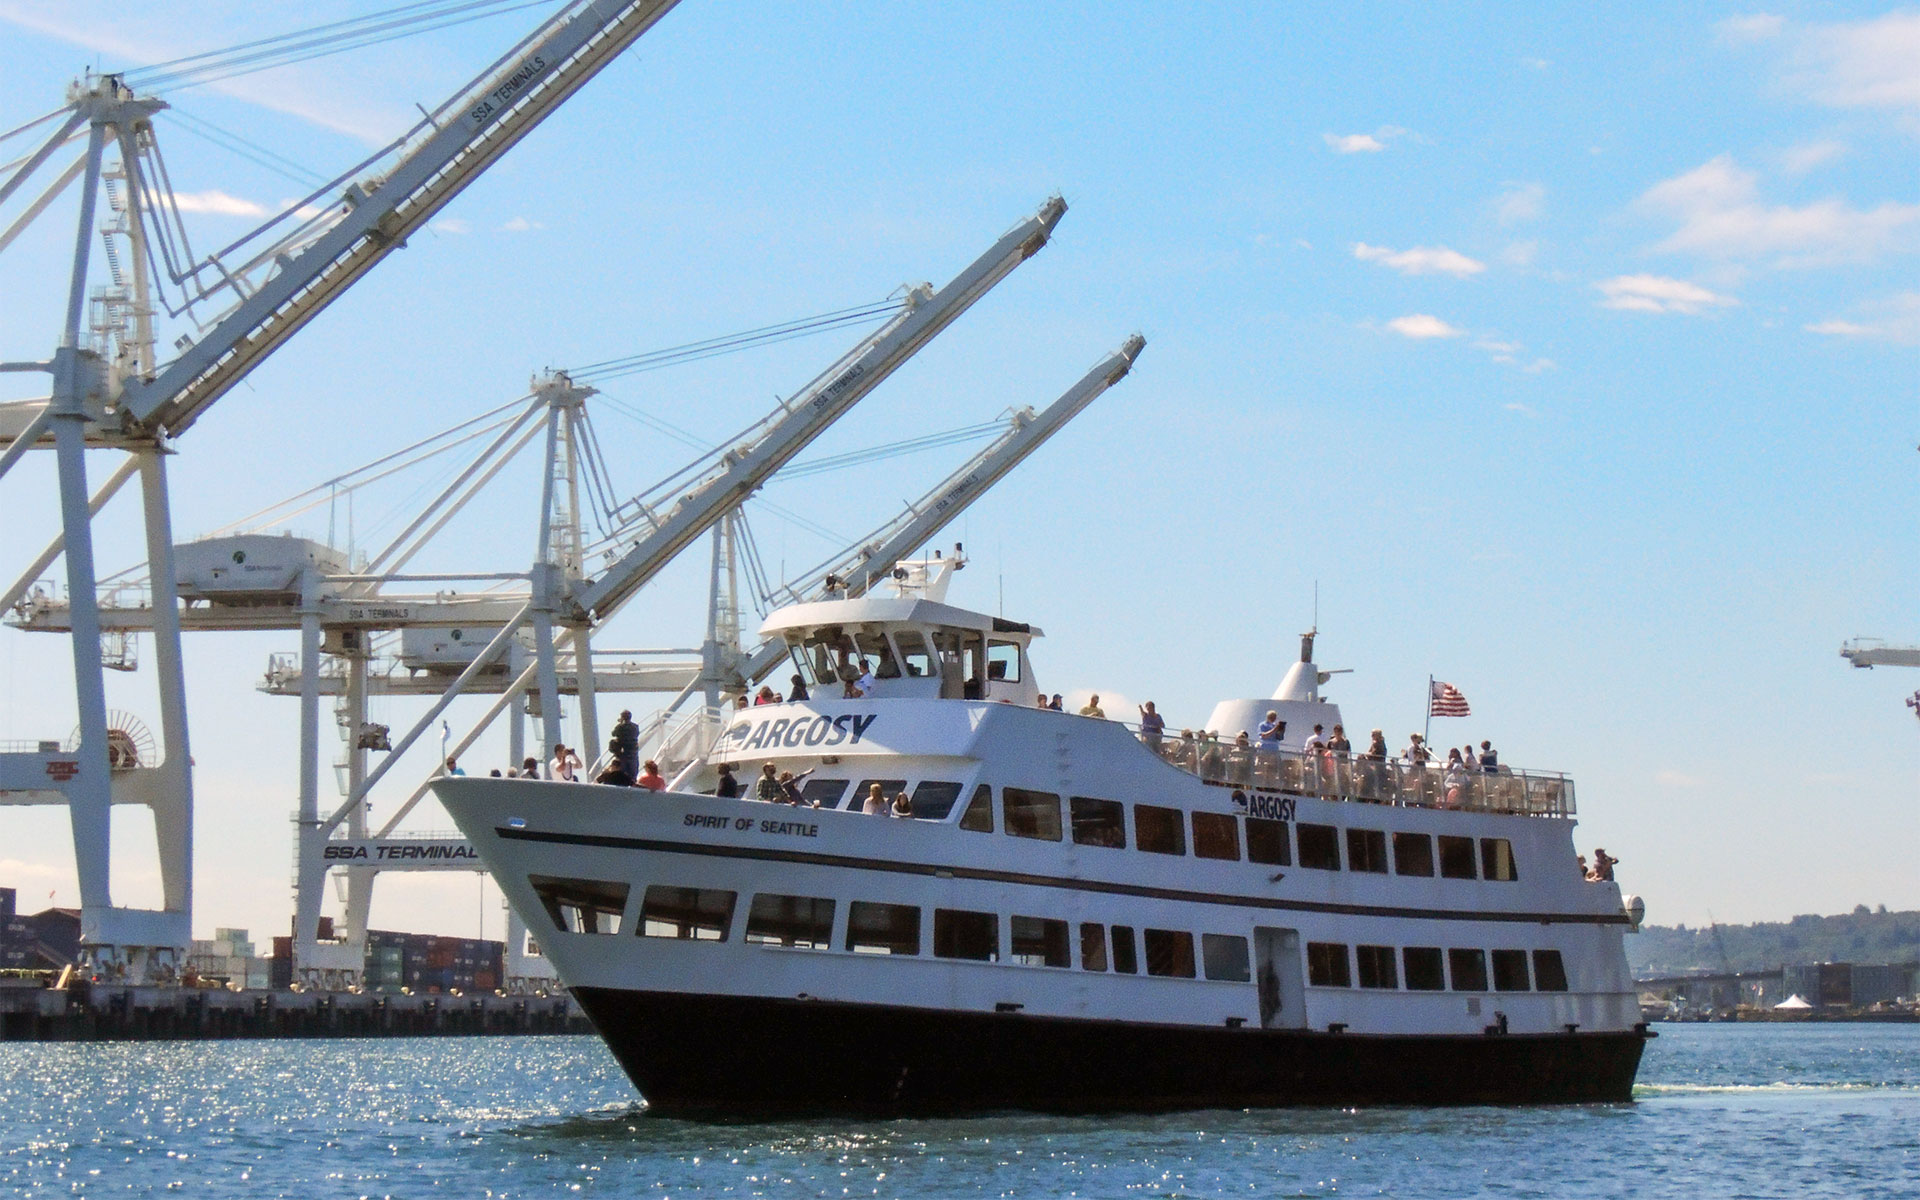 argosy cruises seattle waterfront tours